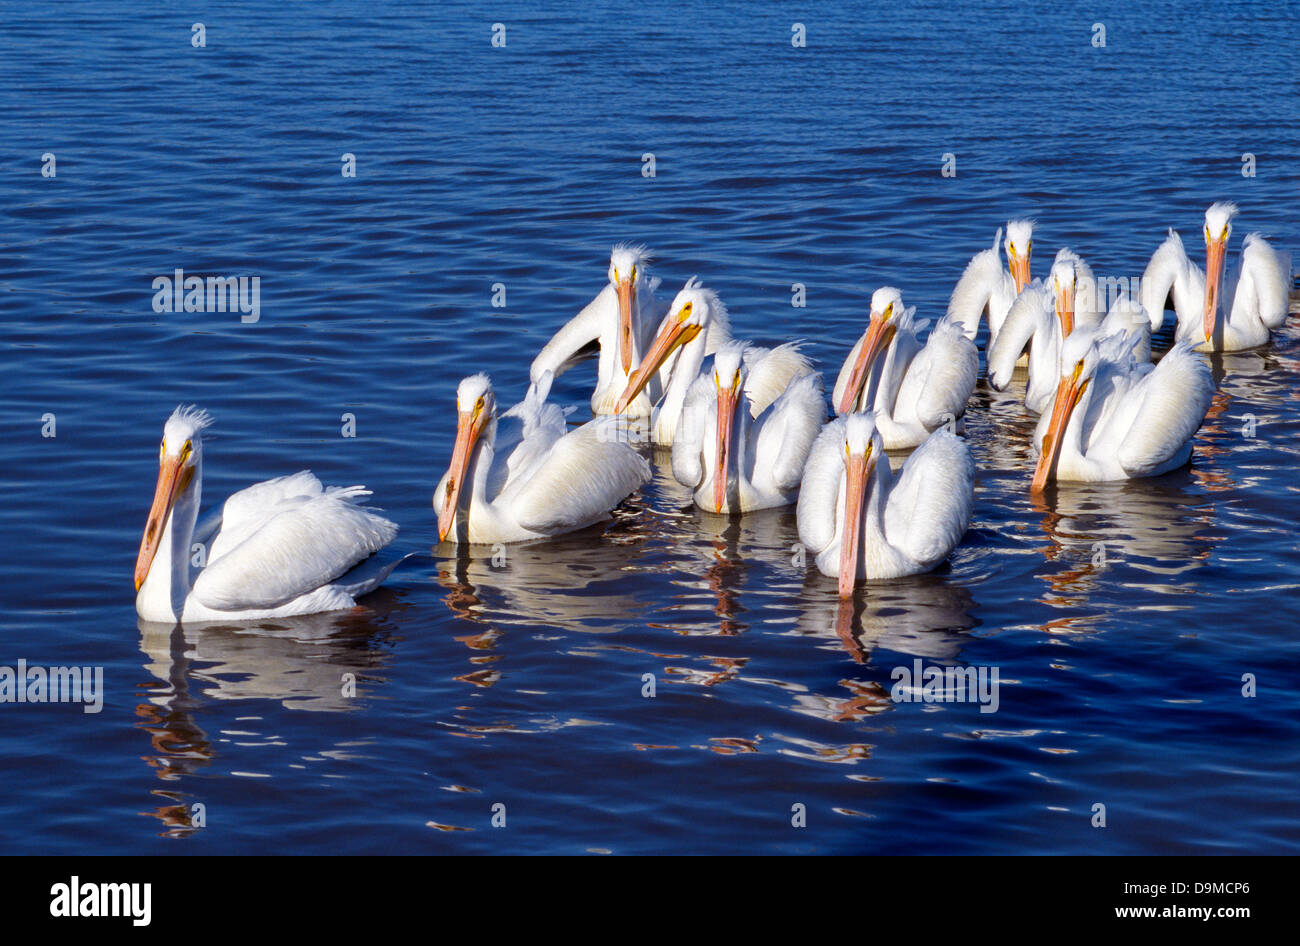 Eine kleine Herde von amerikanischen weißen Pelikane bekannt für ihre bunten Rechnungen schwimmen zusammen in den blauen Gewässern der Galveston Bay in Harris County, Texas, USA. Stockfoto